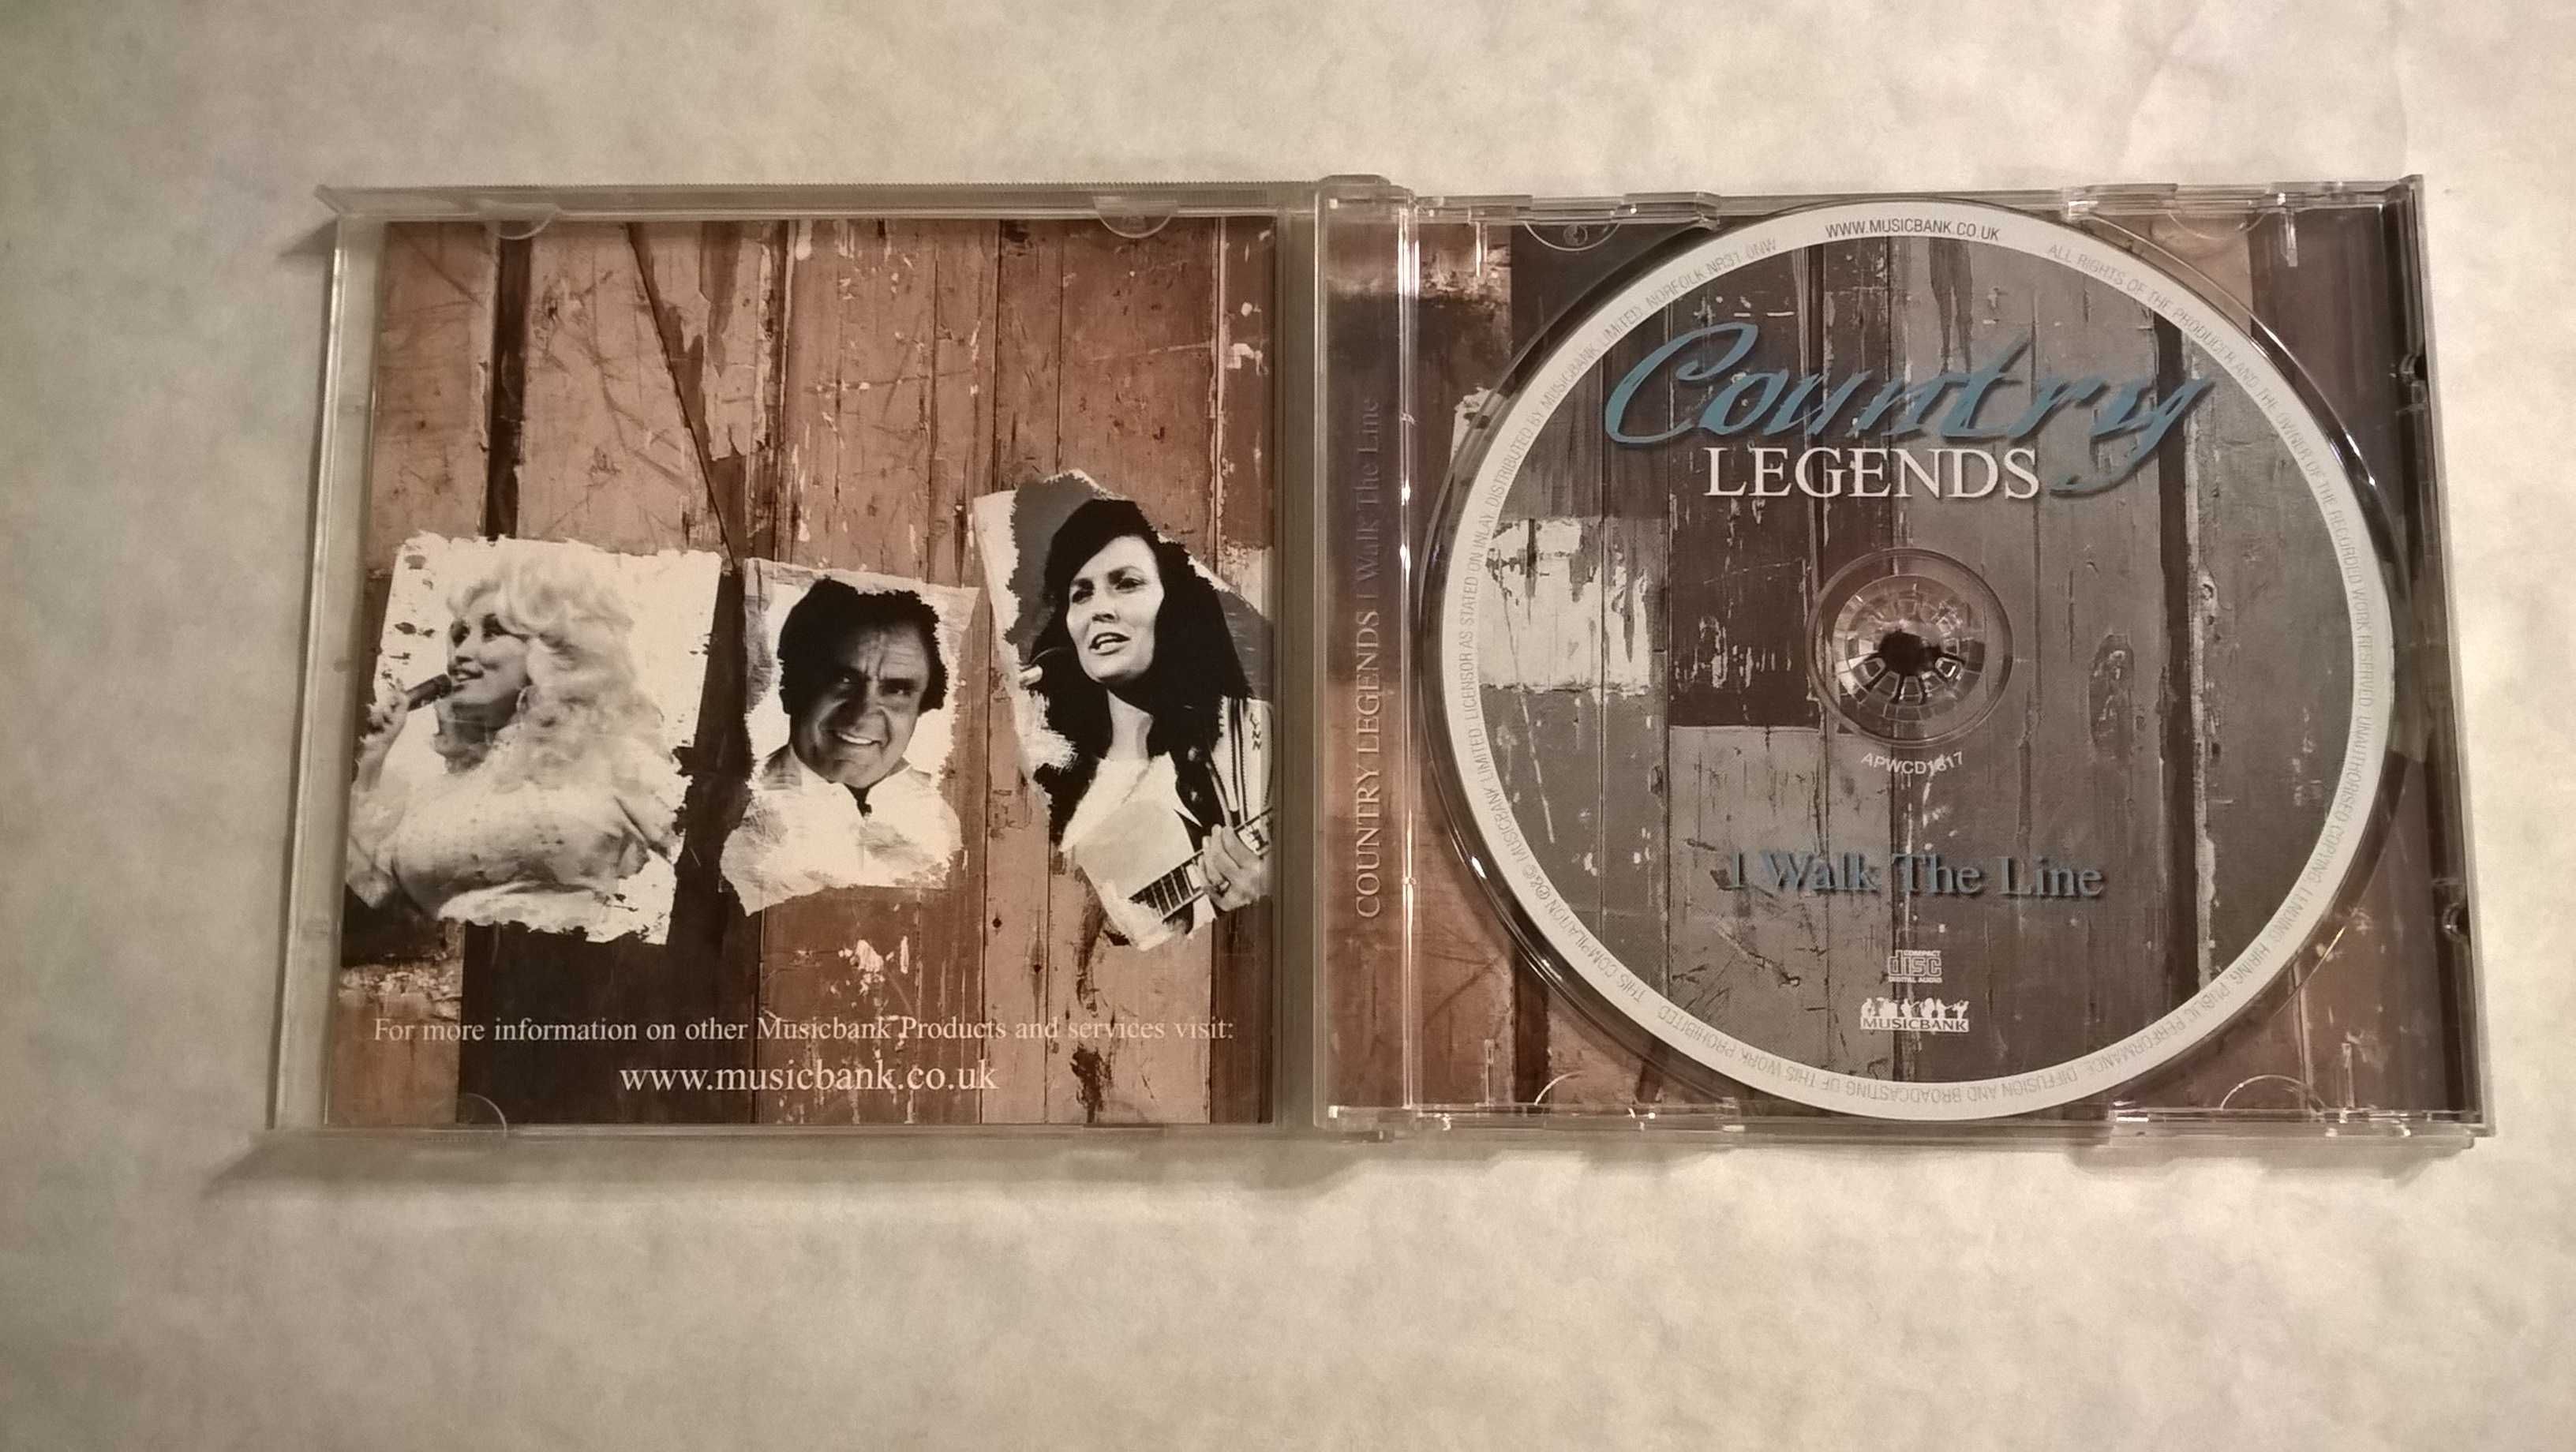 Płyta CD - Country Legends "I walk the line"